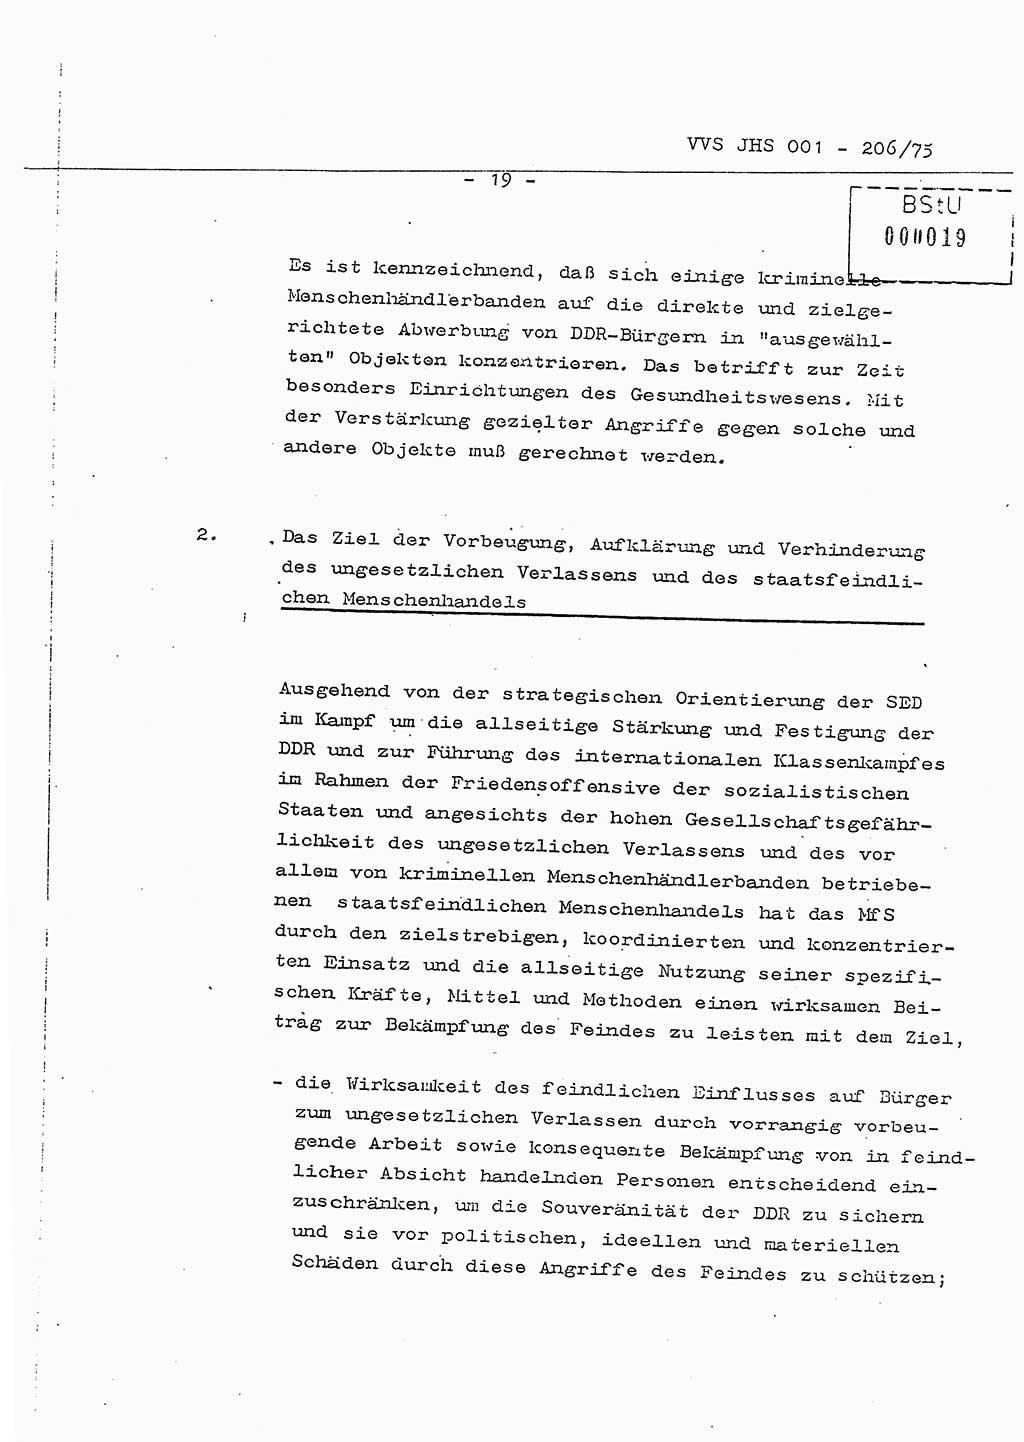 Dissertation Generalmajor Manfred Hummitzsch (Leiter der BV Leipzig), Generalmajor Heinz Fiedler (HA Ⅵ), Oberst Rolf Fister (HA Ⅸ), Ministerium für Staatssicherheit (MfS) [Deutsche Demokratische Republik (DDR)], Juristische Hochschule (JHS), Vertrauliche Verschlußsache (VVS) 001-206/75, Potsdam 1975, Seite 19 (Diss. MfS DDR JHS VVS 001-206/75 1975, S. 19)